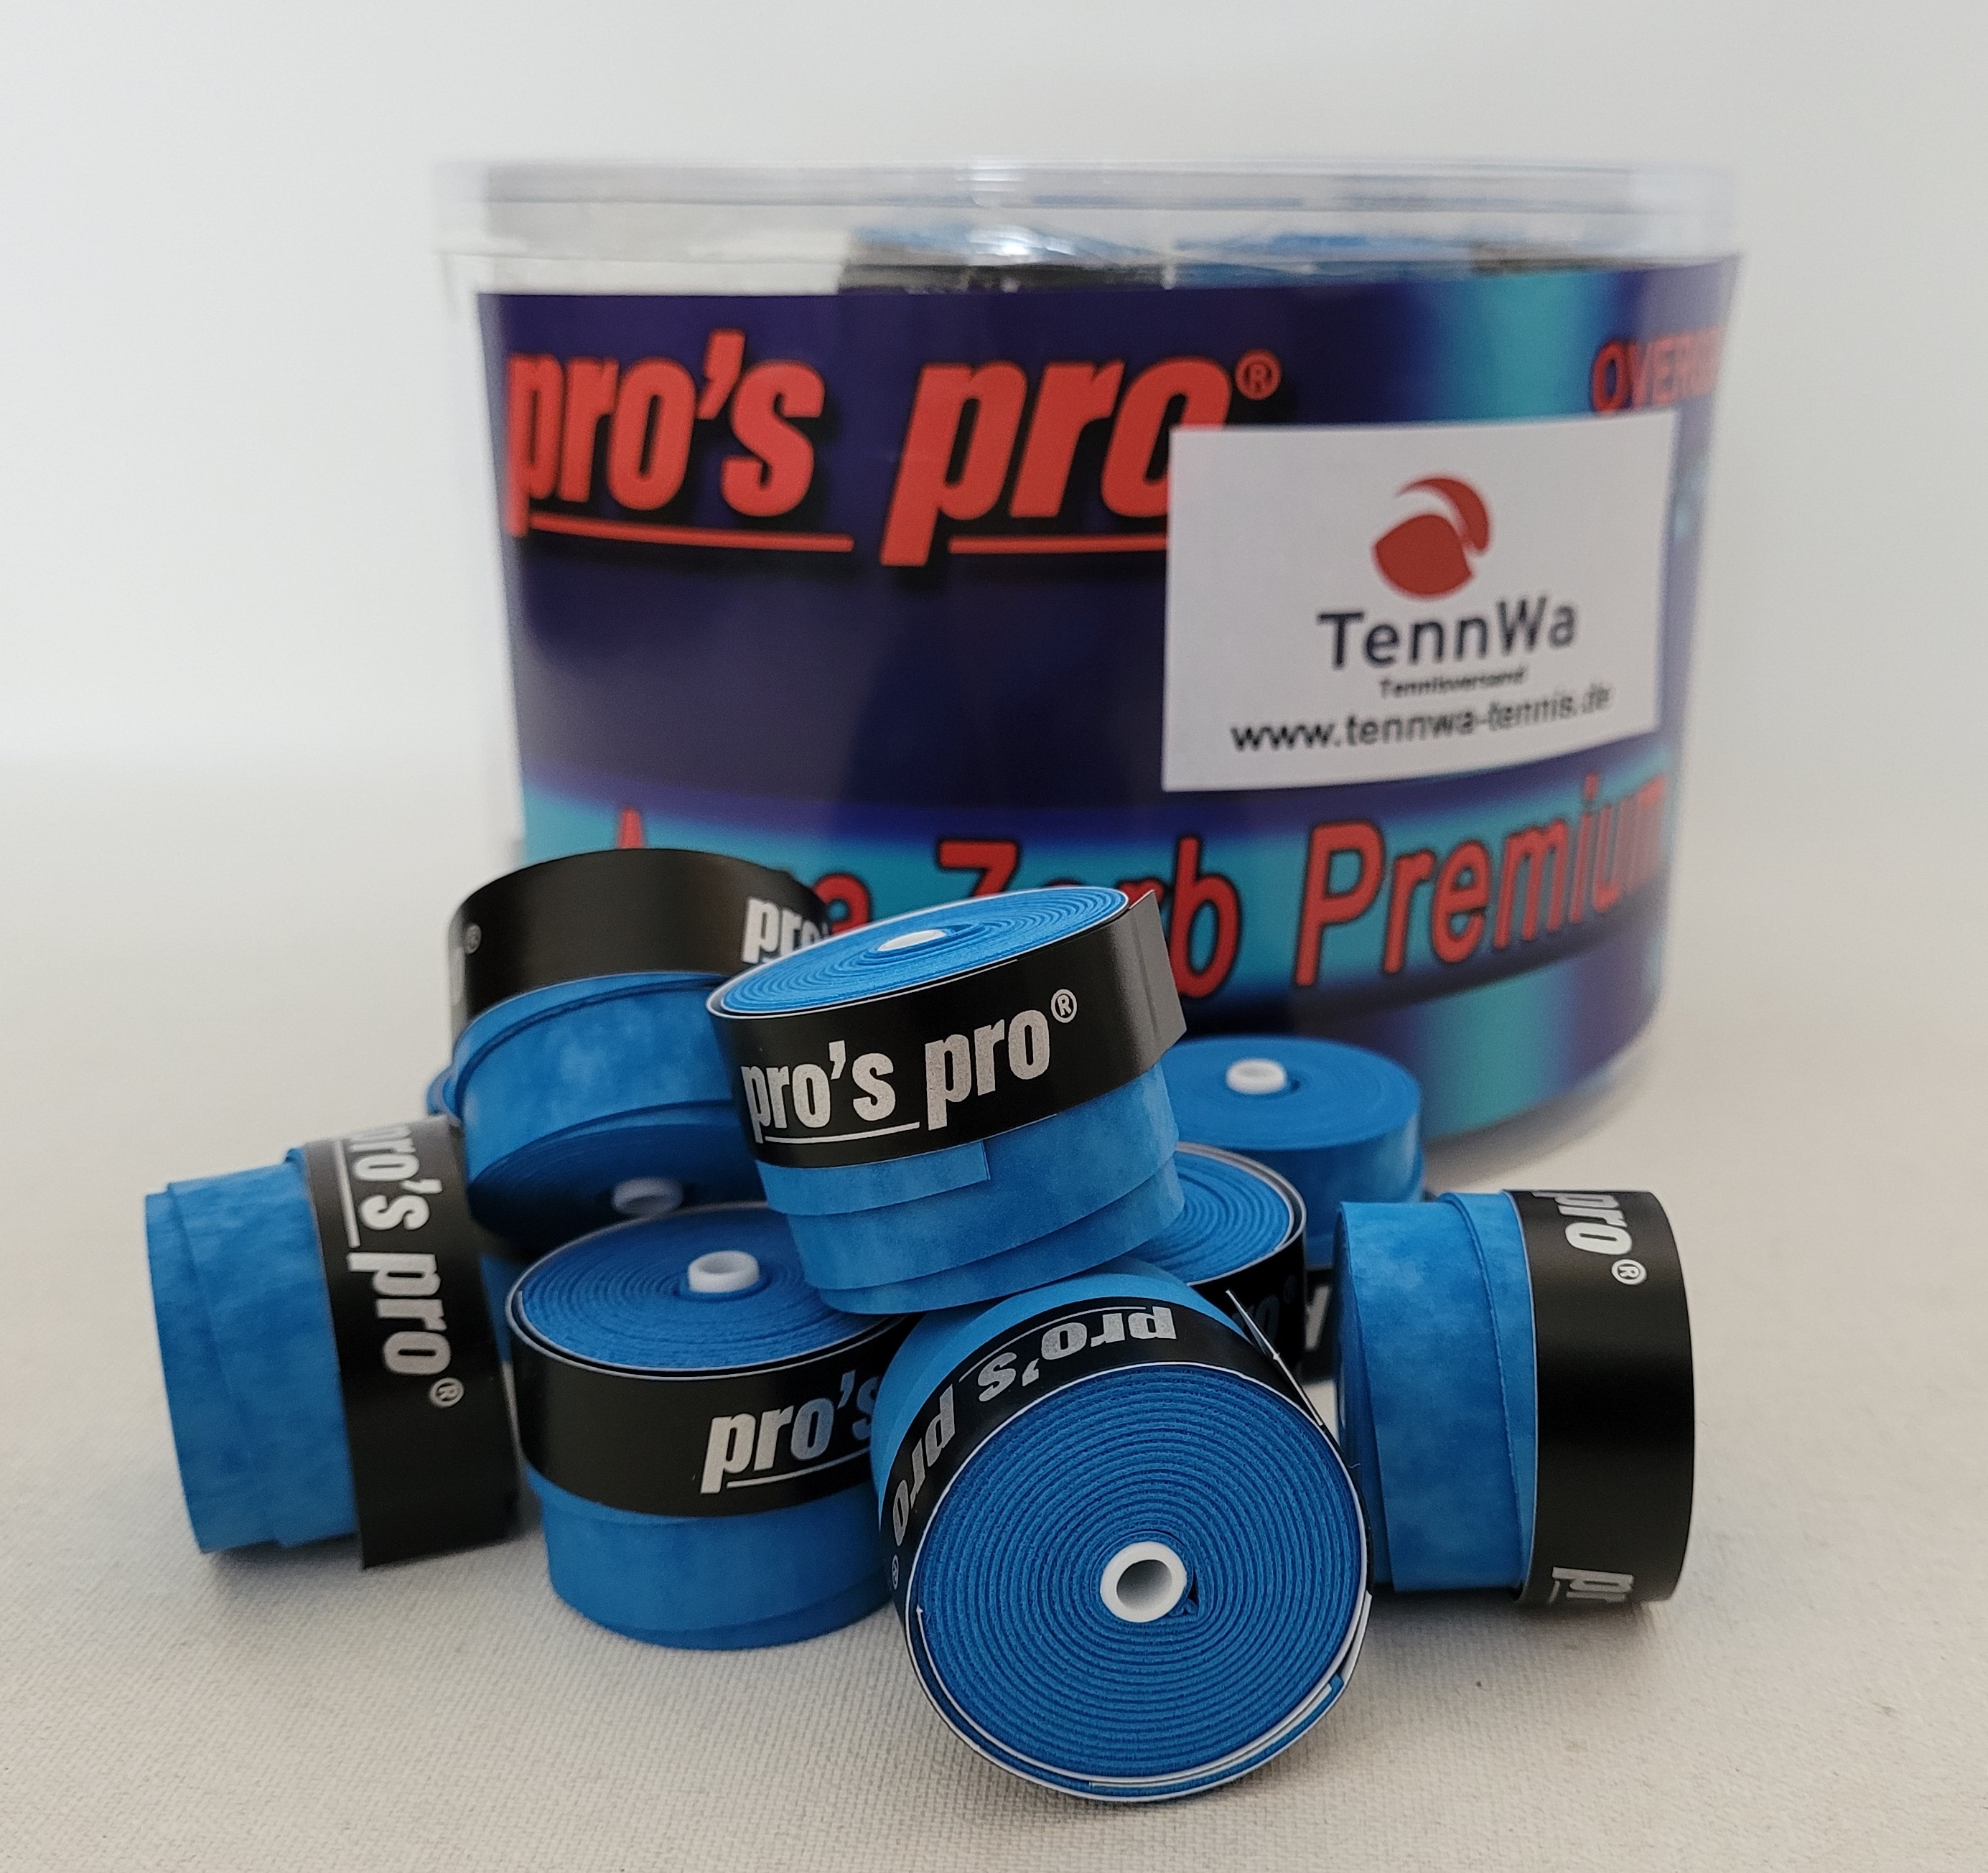 Pros Pro Aqua Zorb Premium blau, 10 Stück